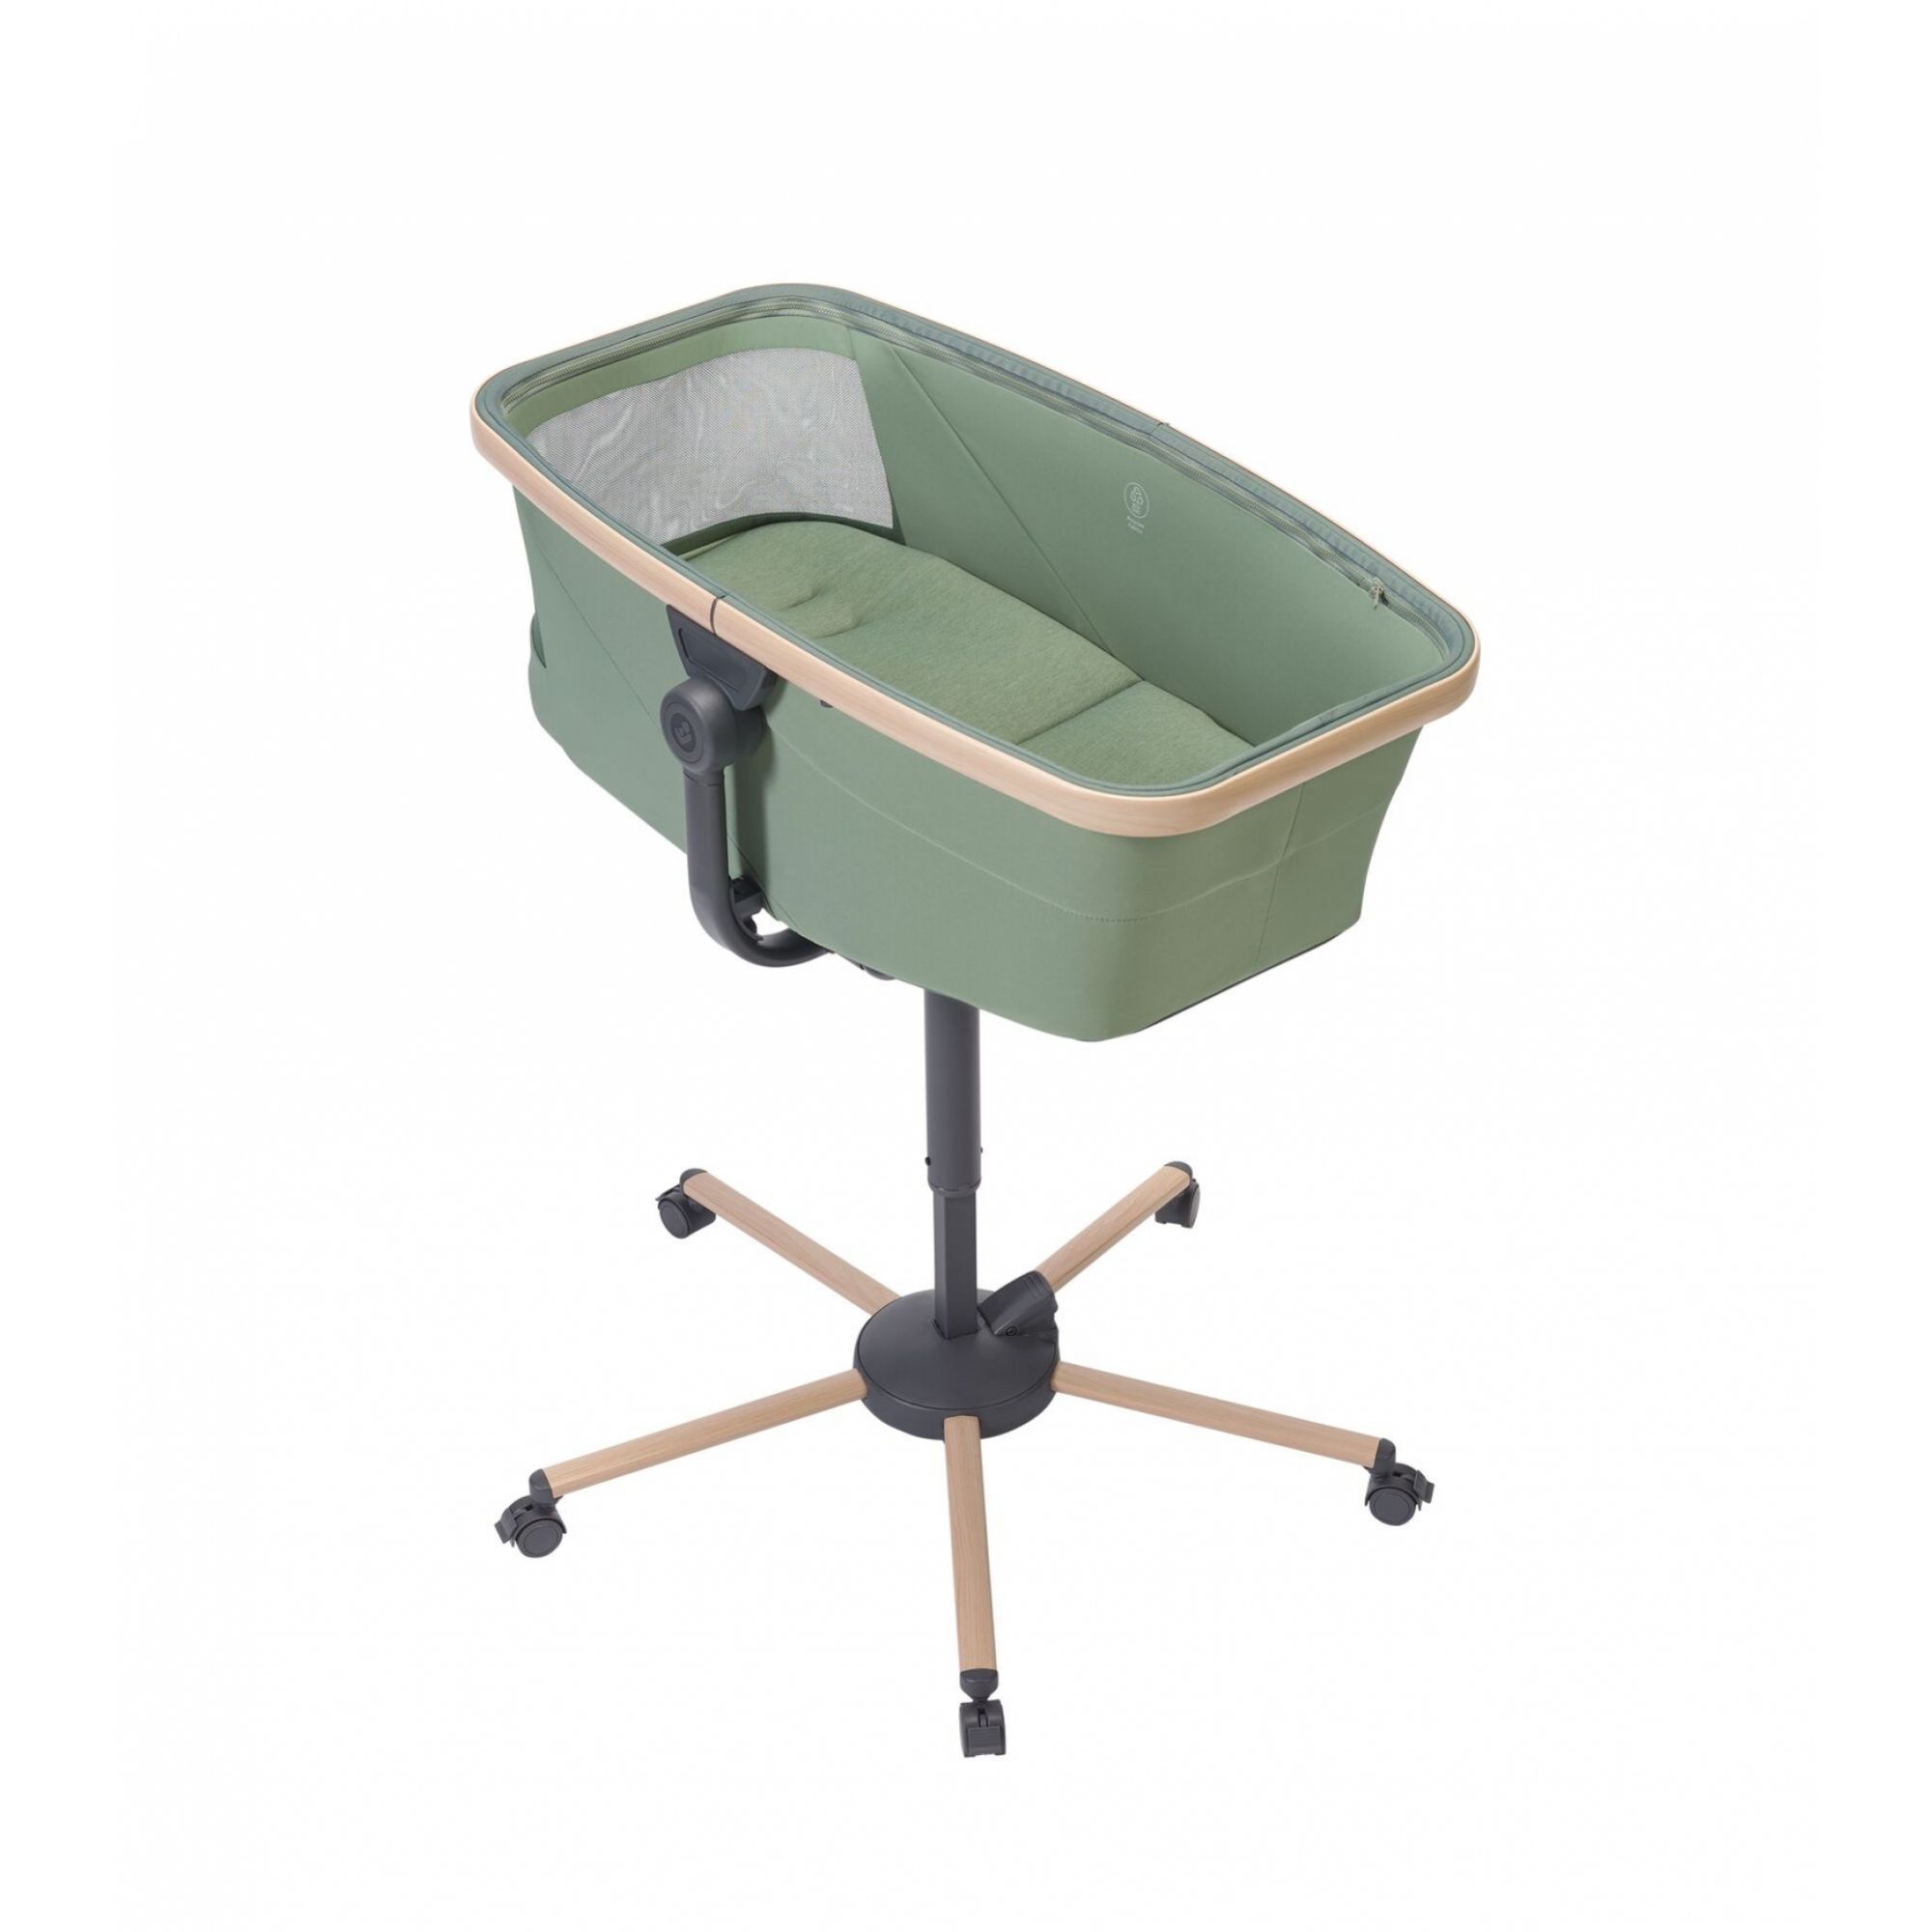 Rehausseur MAXI COSI Kit repas pour transat Alba, chaise haute bébé avec  tablette + housse de protection Beyond Green, de 6 mois a 3 ans